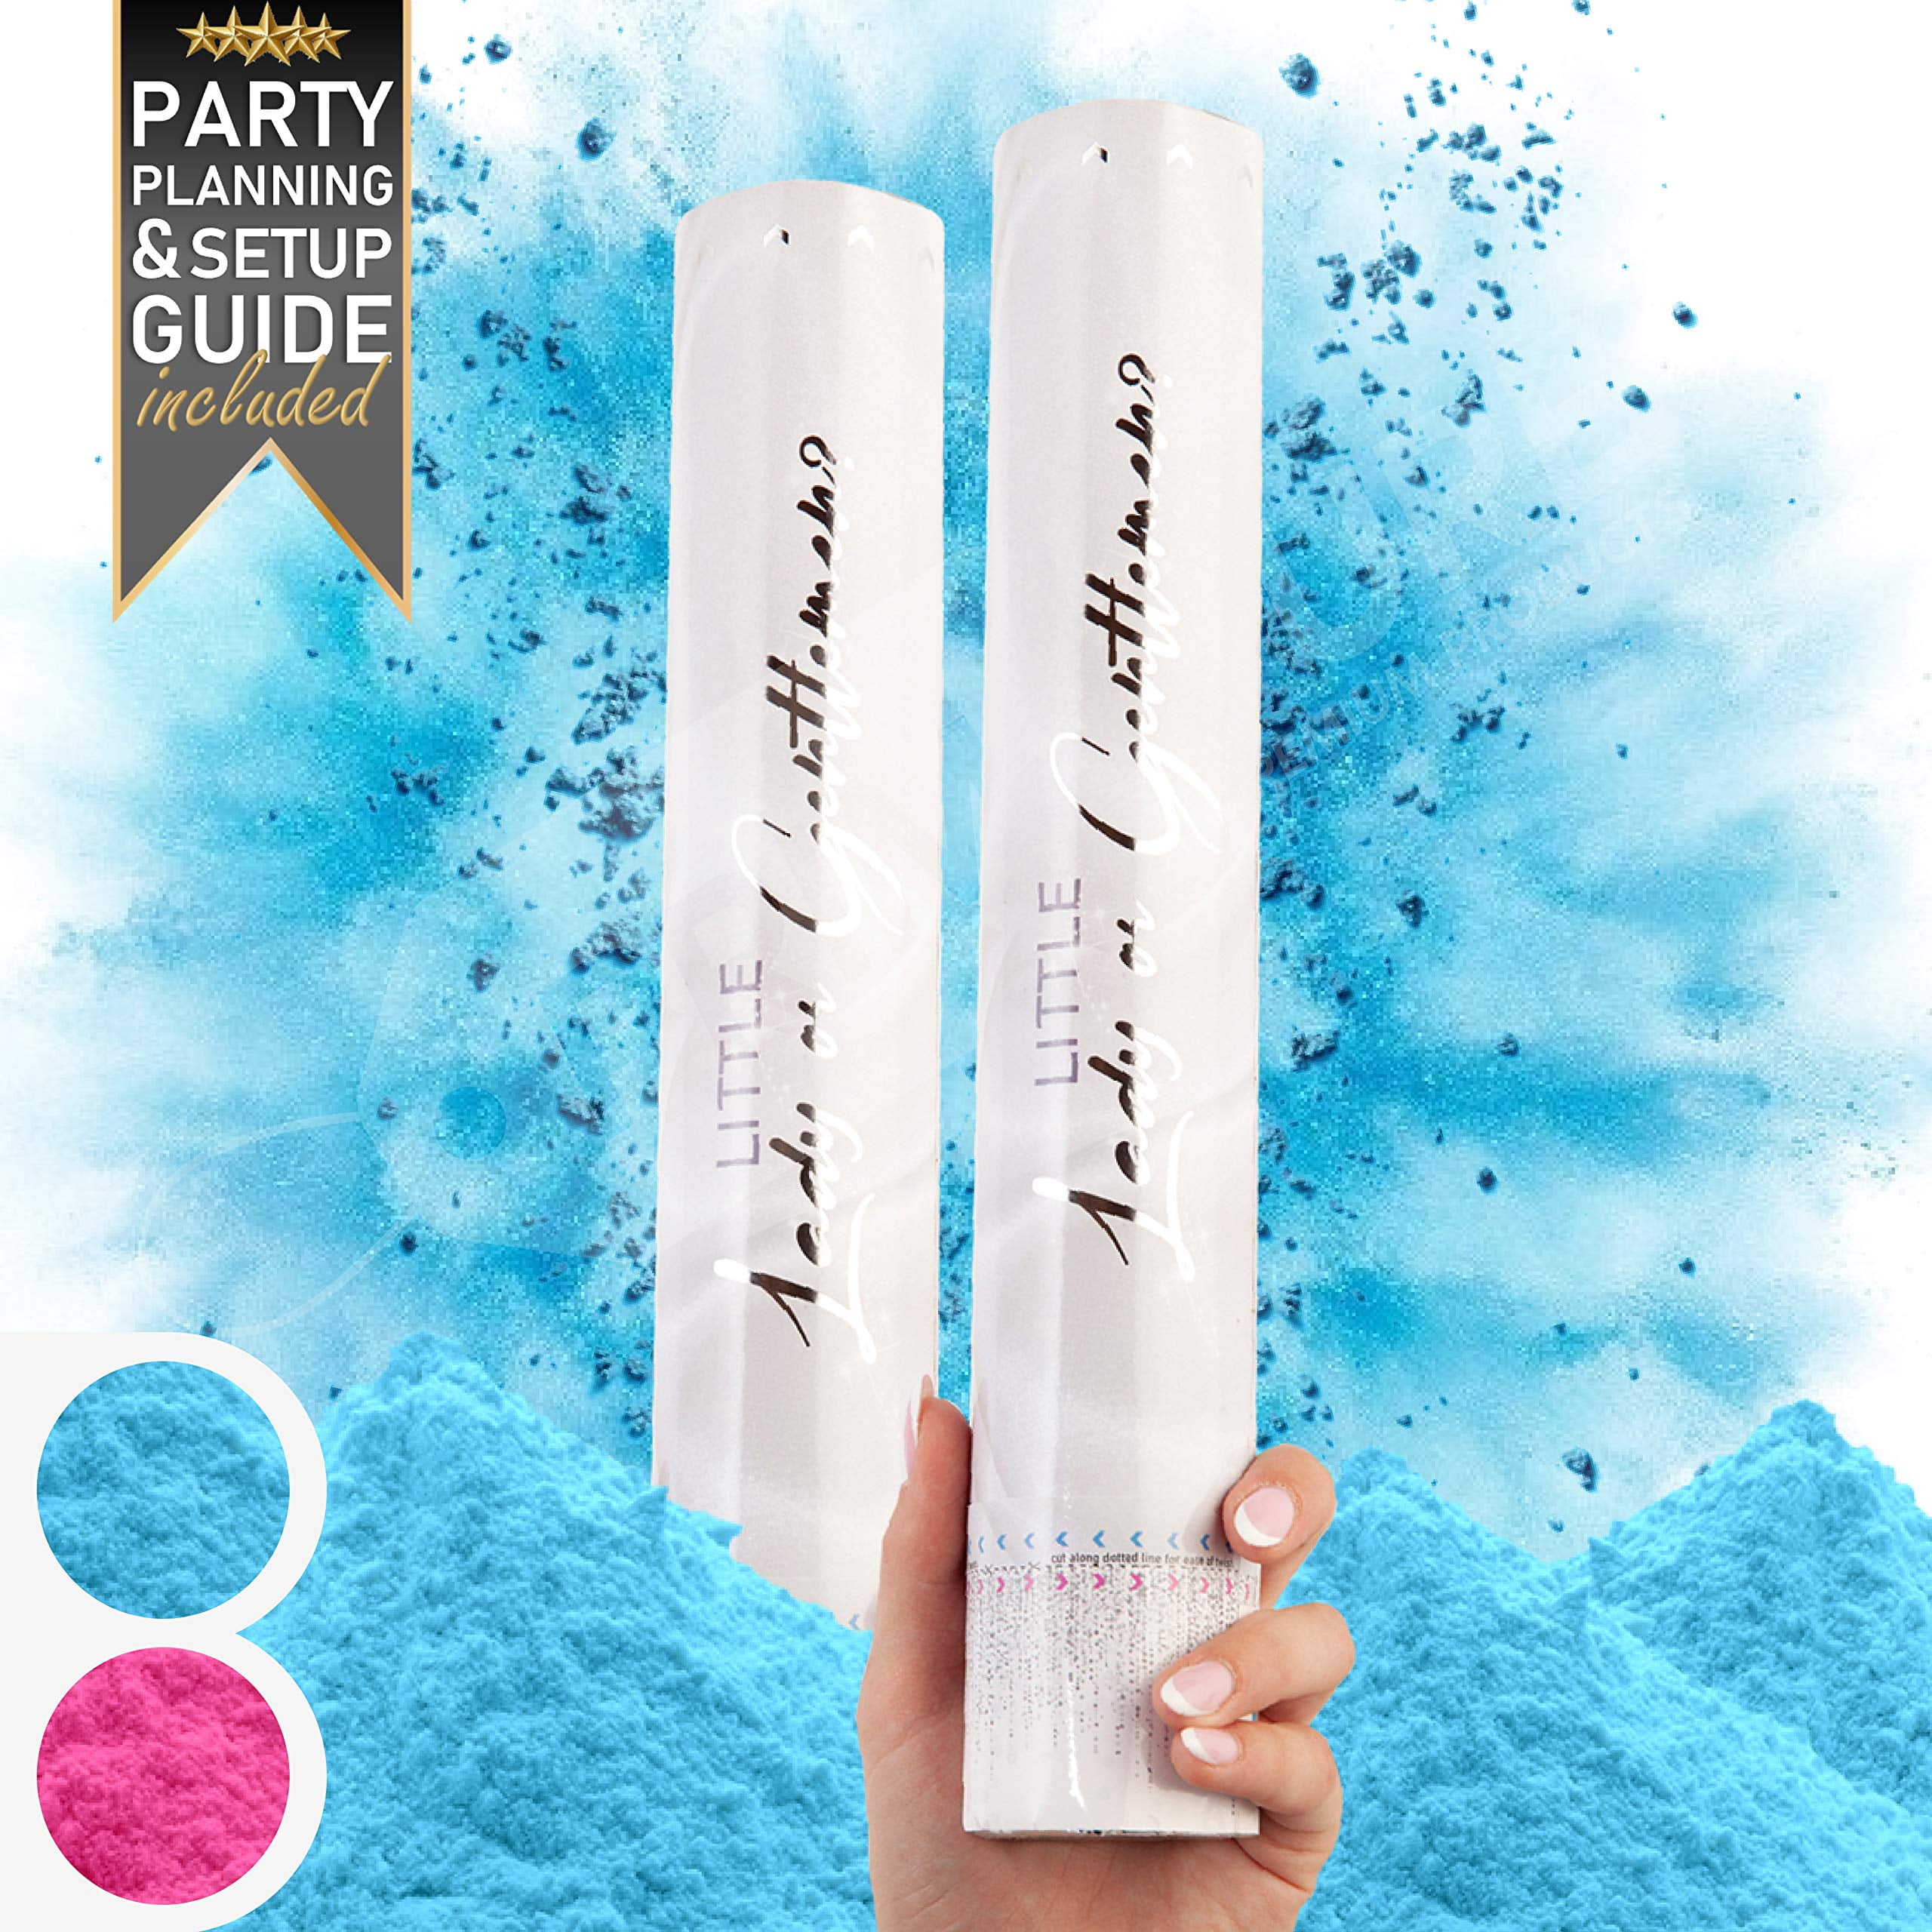 Hawwwy 2lbs Blue Powder for Party, Festival, Girl Boy Gender Reveal Powder  